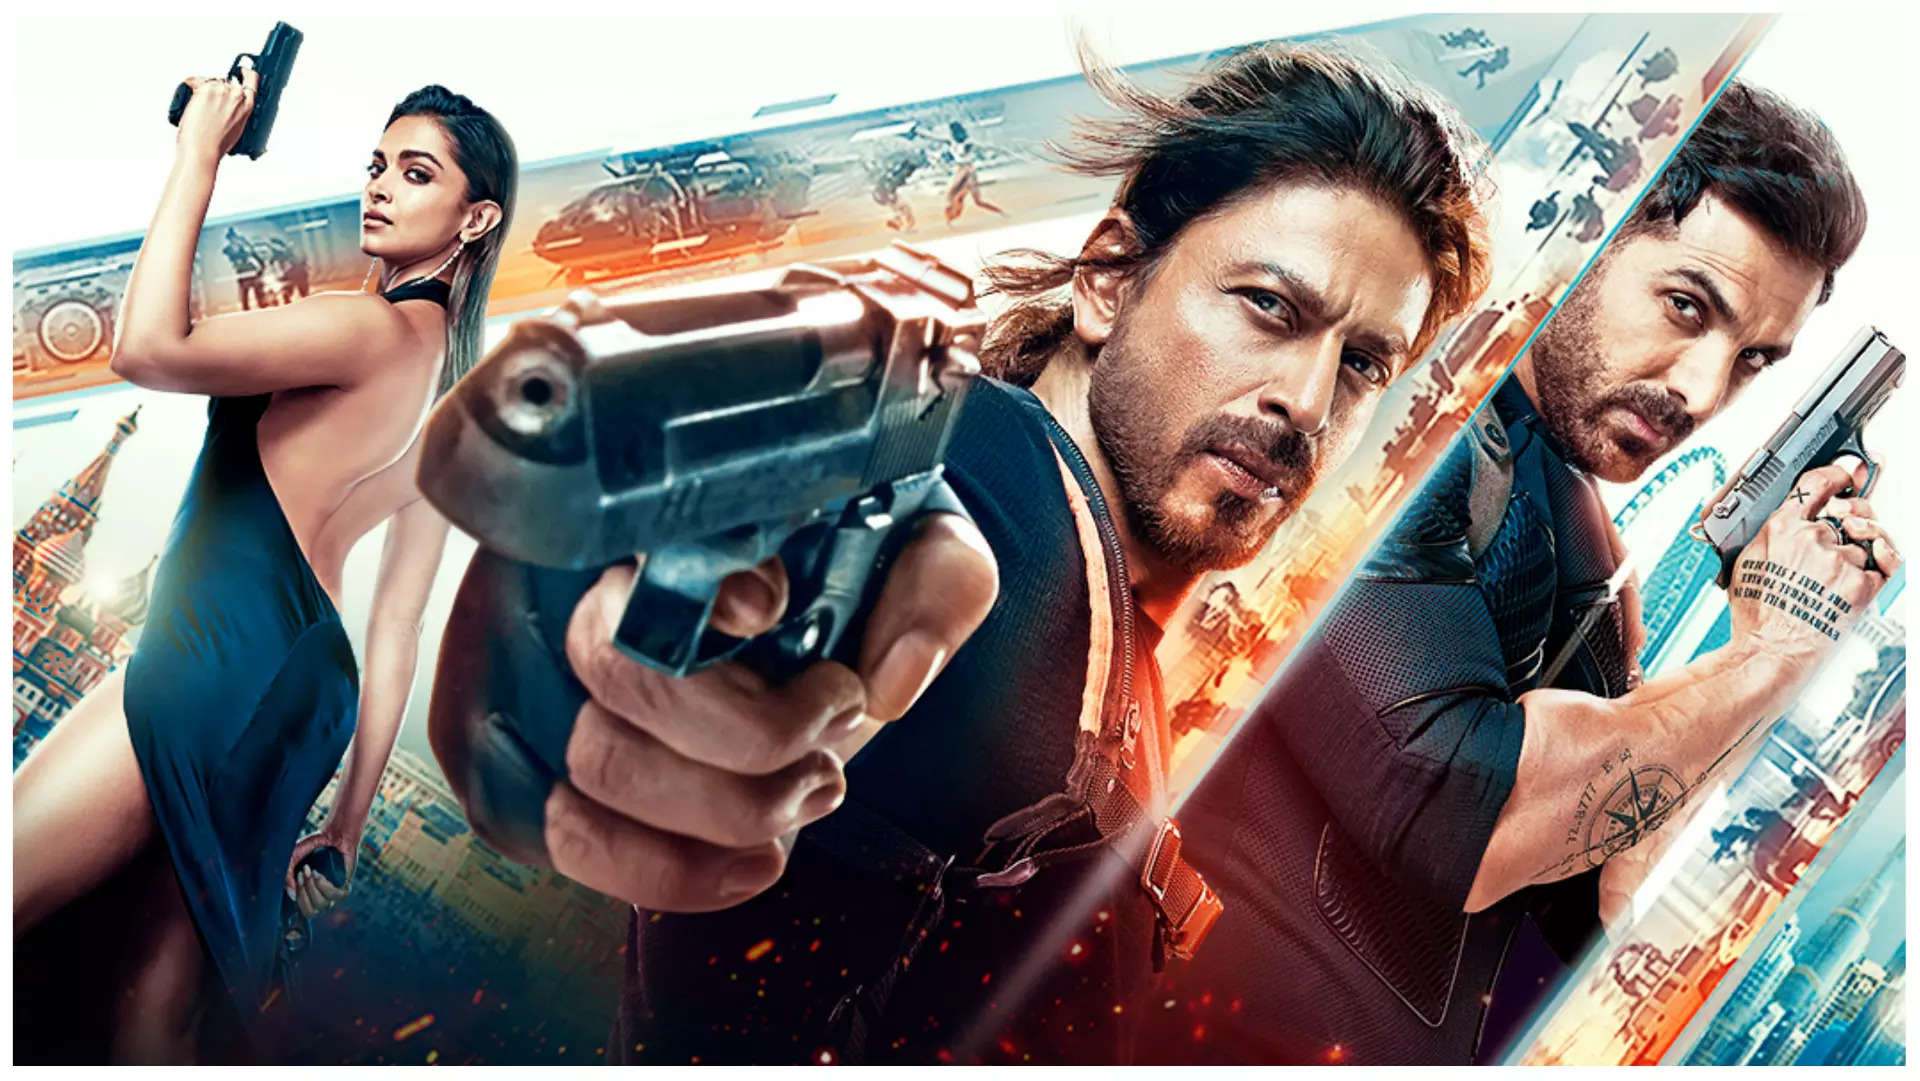 Pathan Movie First Review: Shah Rukh Khan's Satrrer Full Movie Review  Download in Hindi - पठान फर्स्ट रिव्यू: शाहरुख खान की परफॉर्मेंस देख झूम  उठे दर्शक